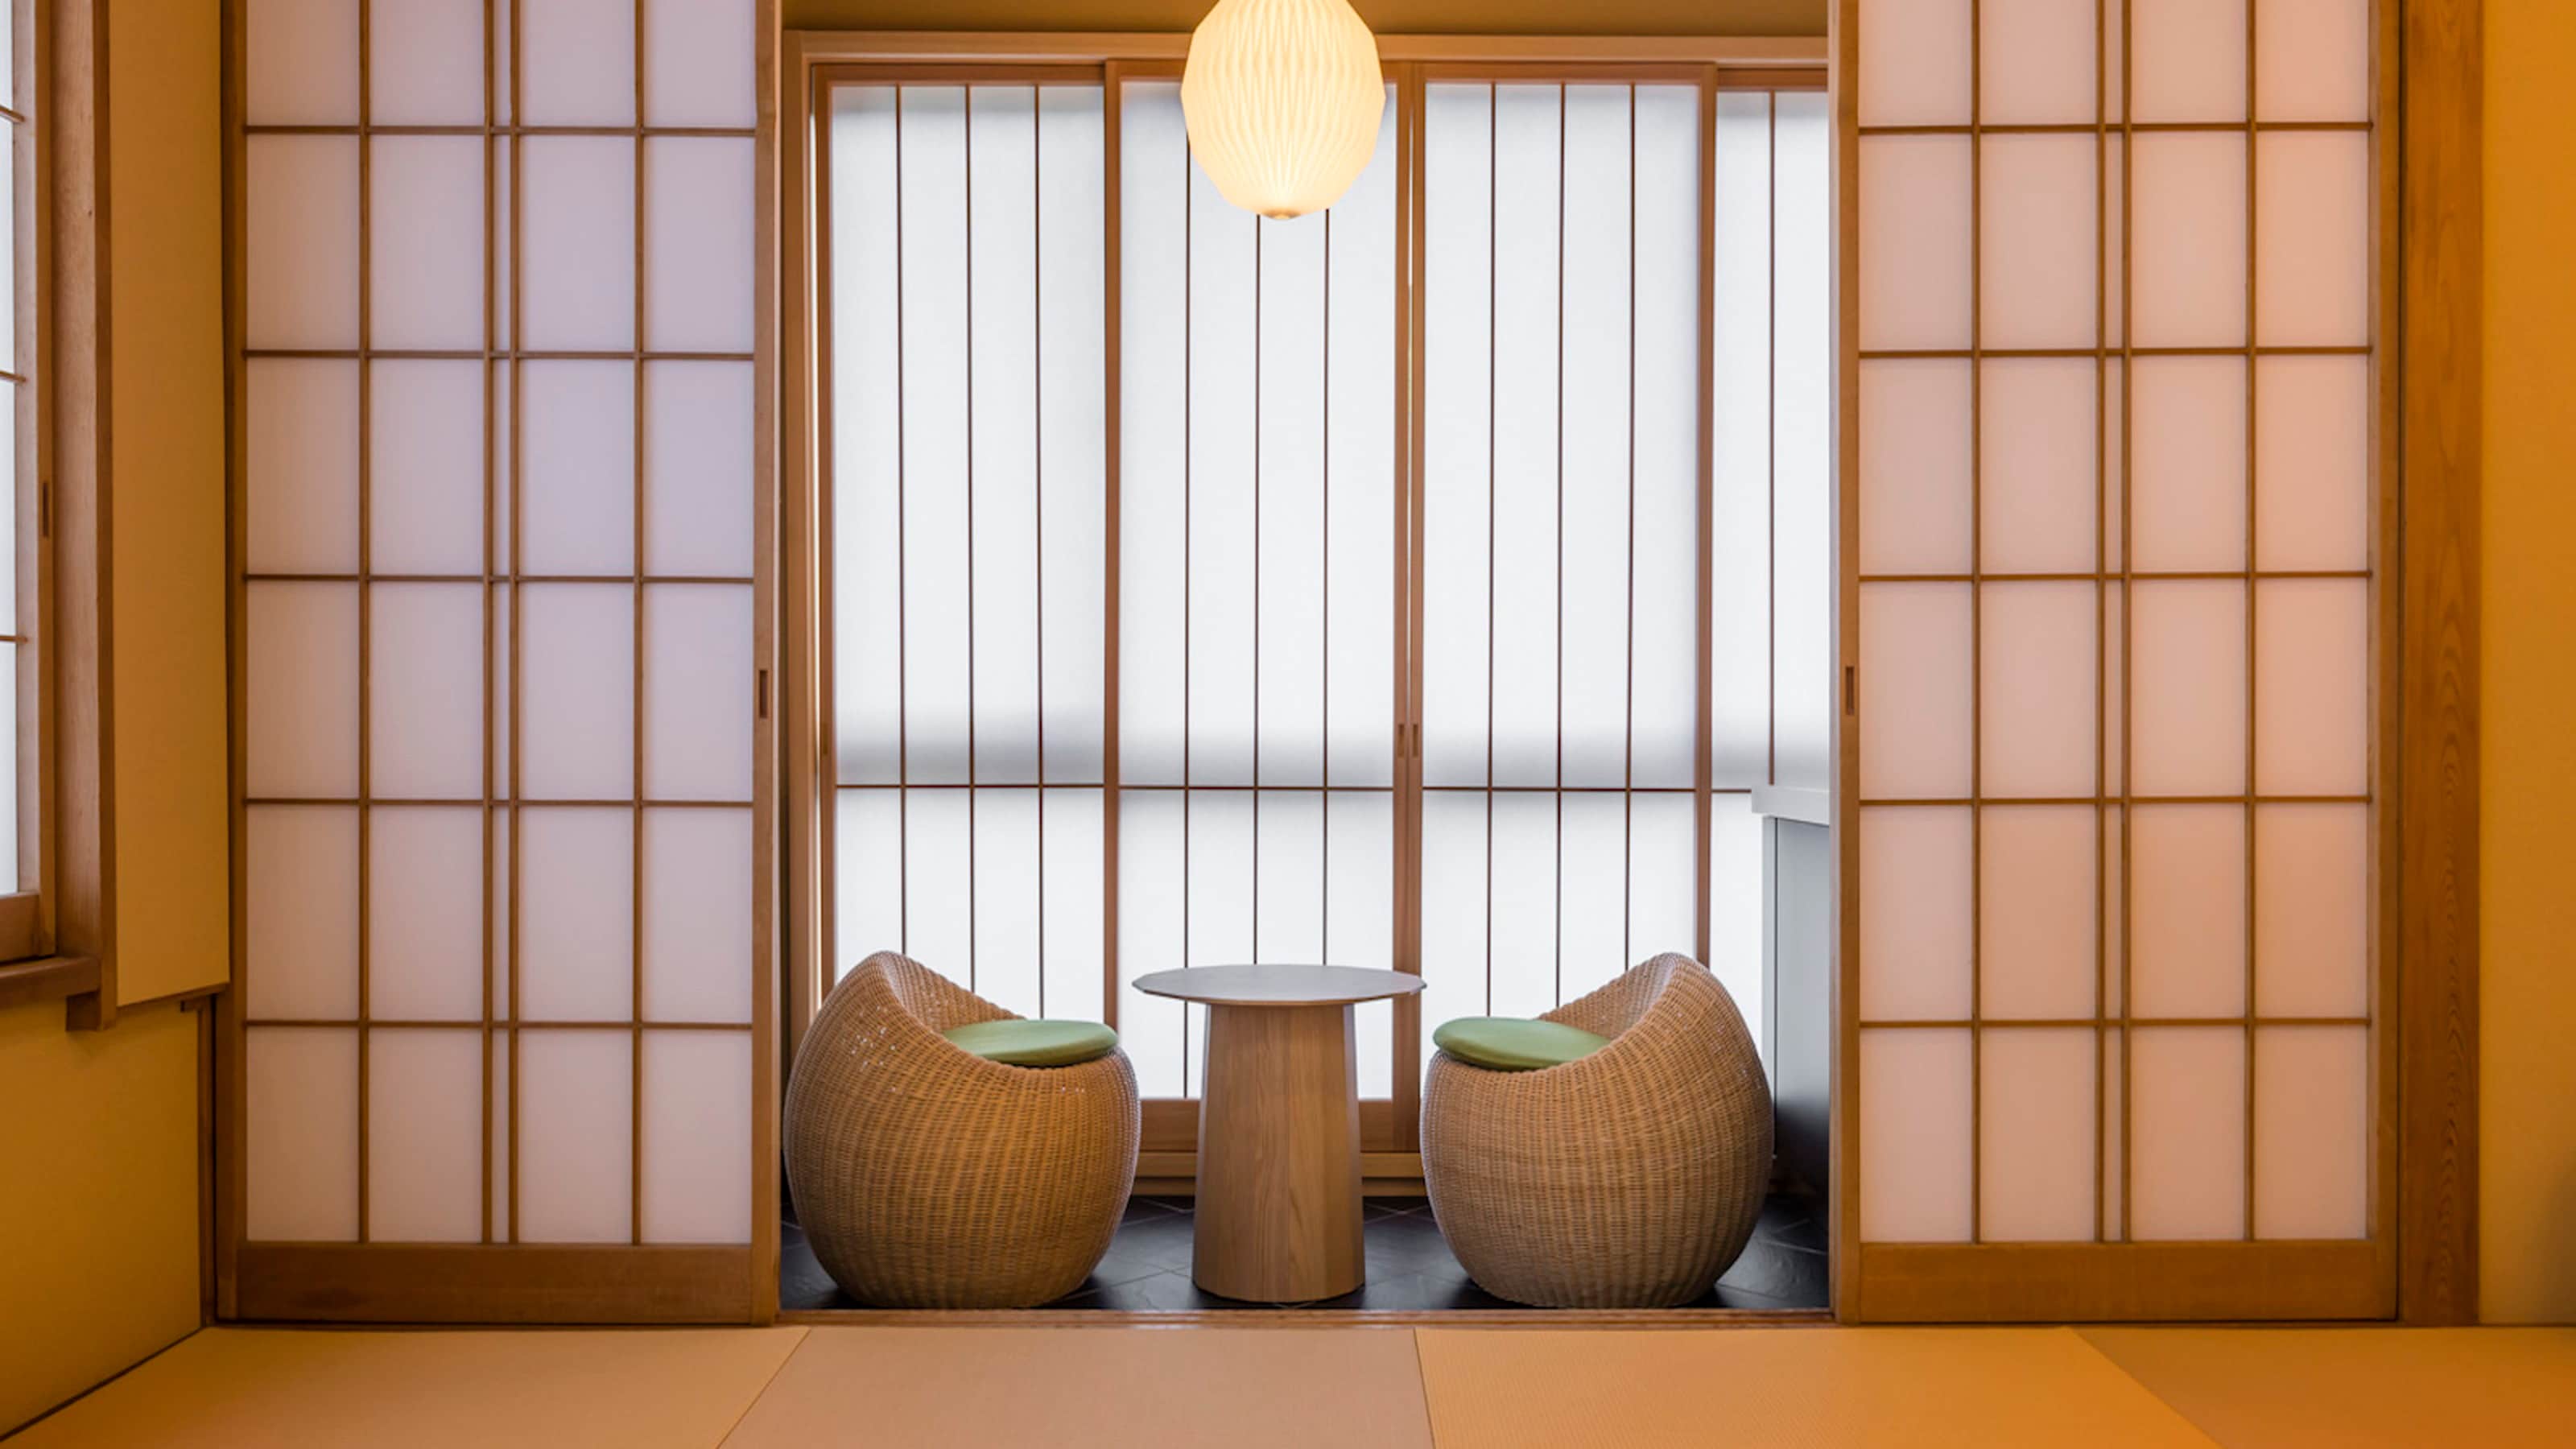 【大型檜木流泉半露天浴池】日式房間10張榻榻米